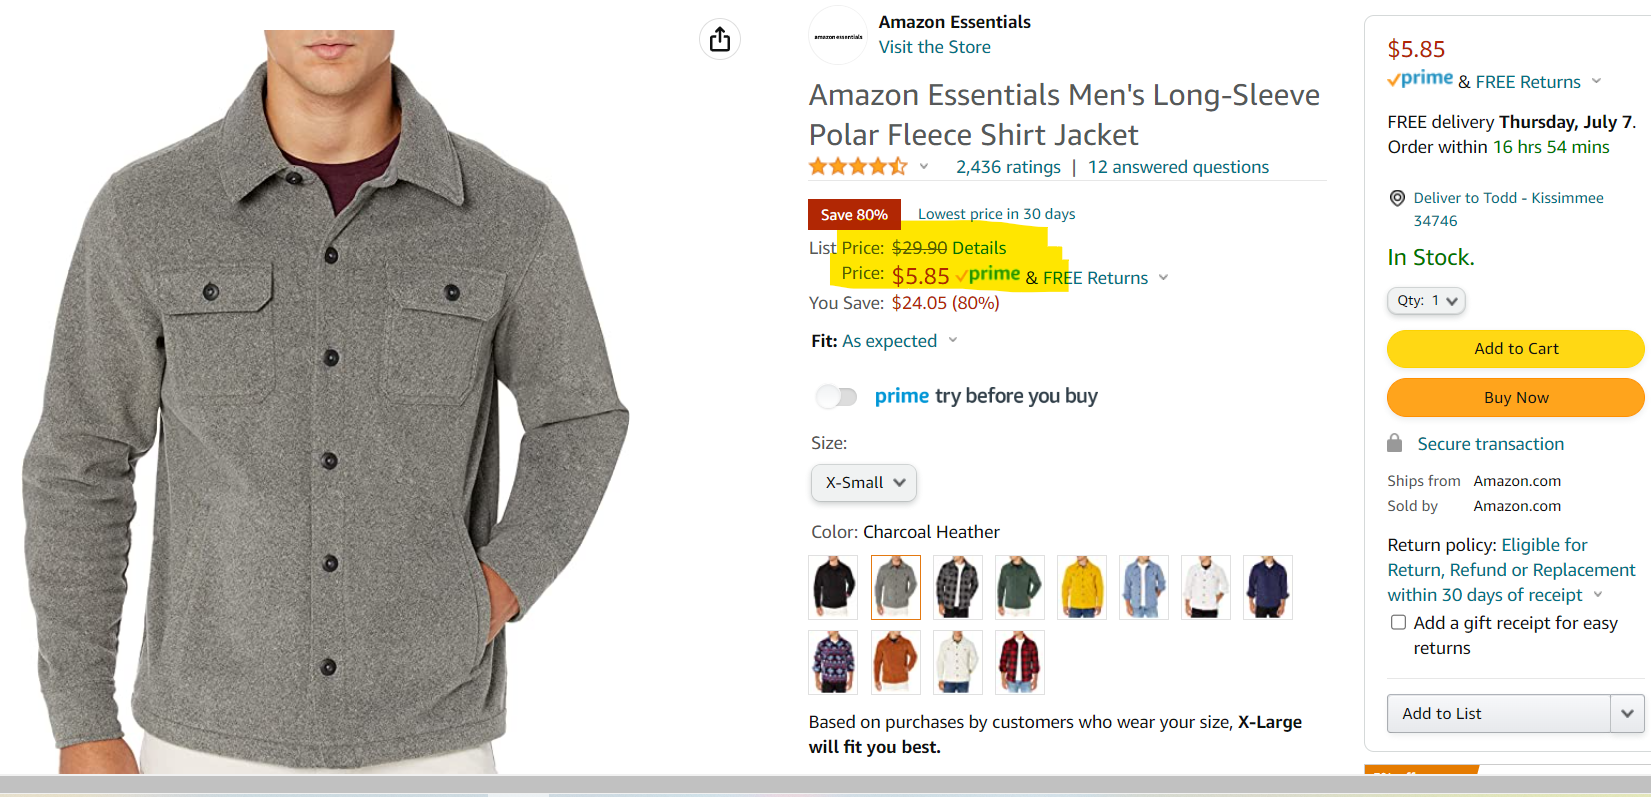 Amazon Price Error? Fleece Shirt Jacket 80% Off!